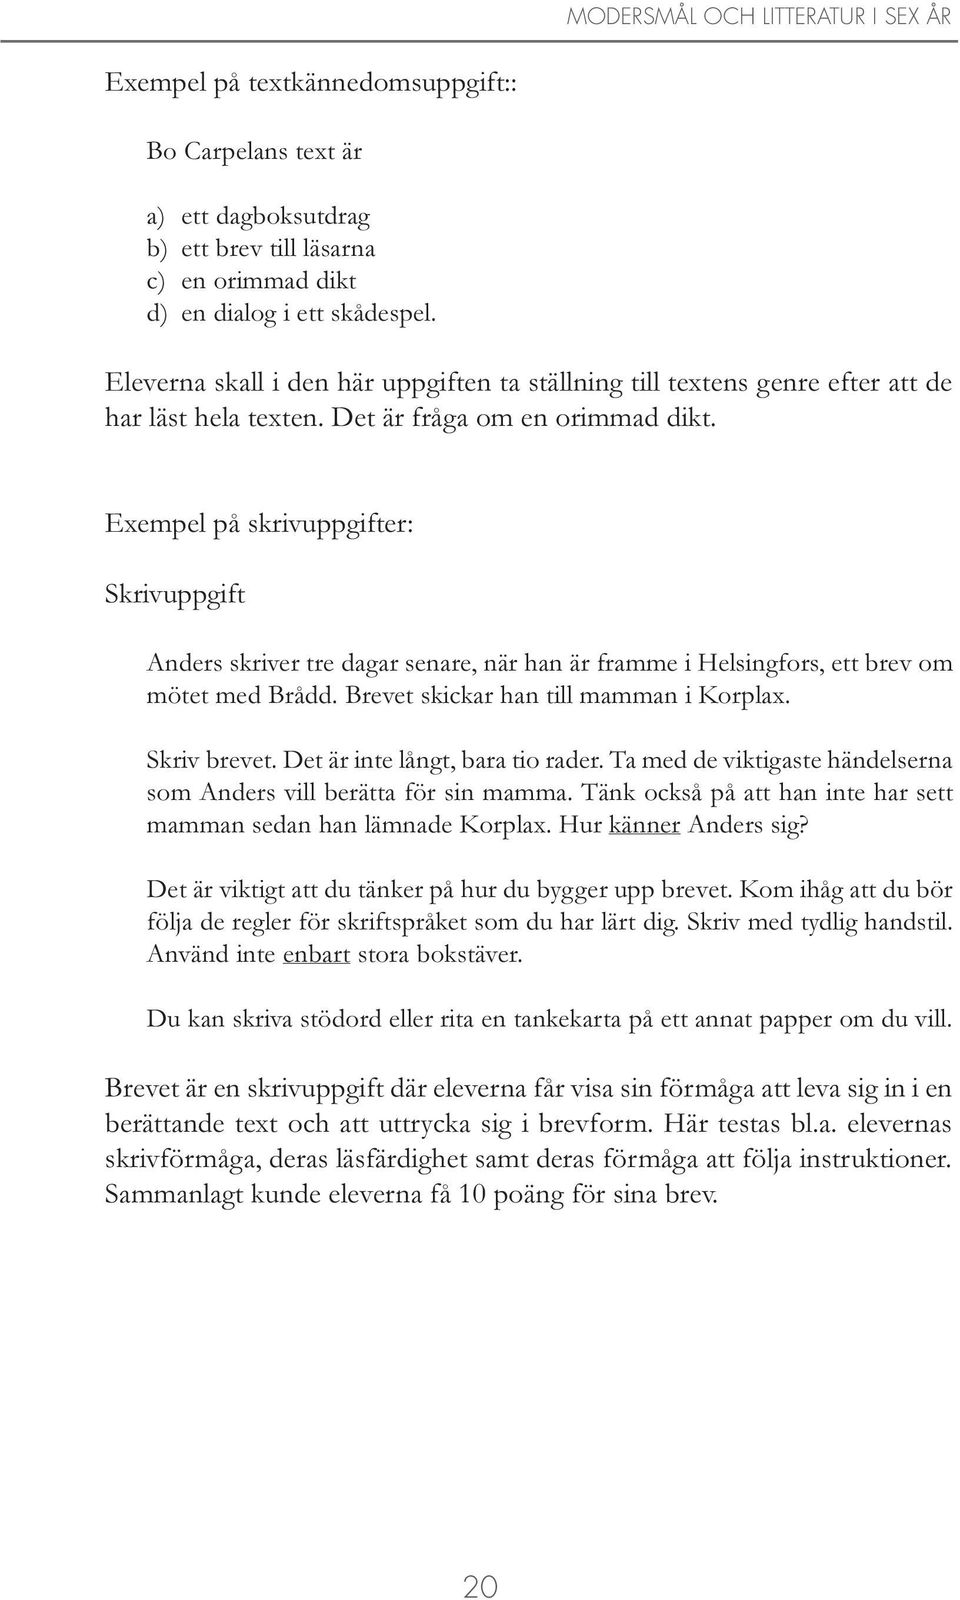 Exempel på skrivuppgifter: Skrivuppgift Anders skriver tre dagar senare, när han är framme i Helsingfors, ett brev om mötet med Brådd. Brevet skickar han till mamman i Korplax. Skriv brevet.